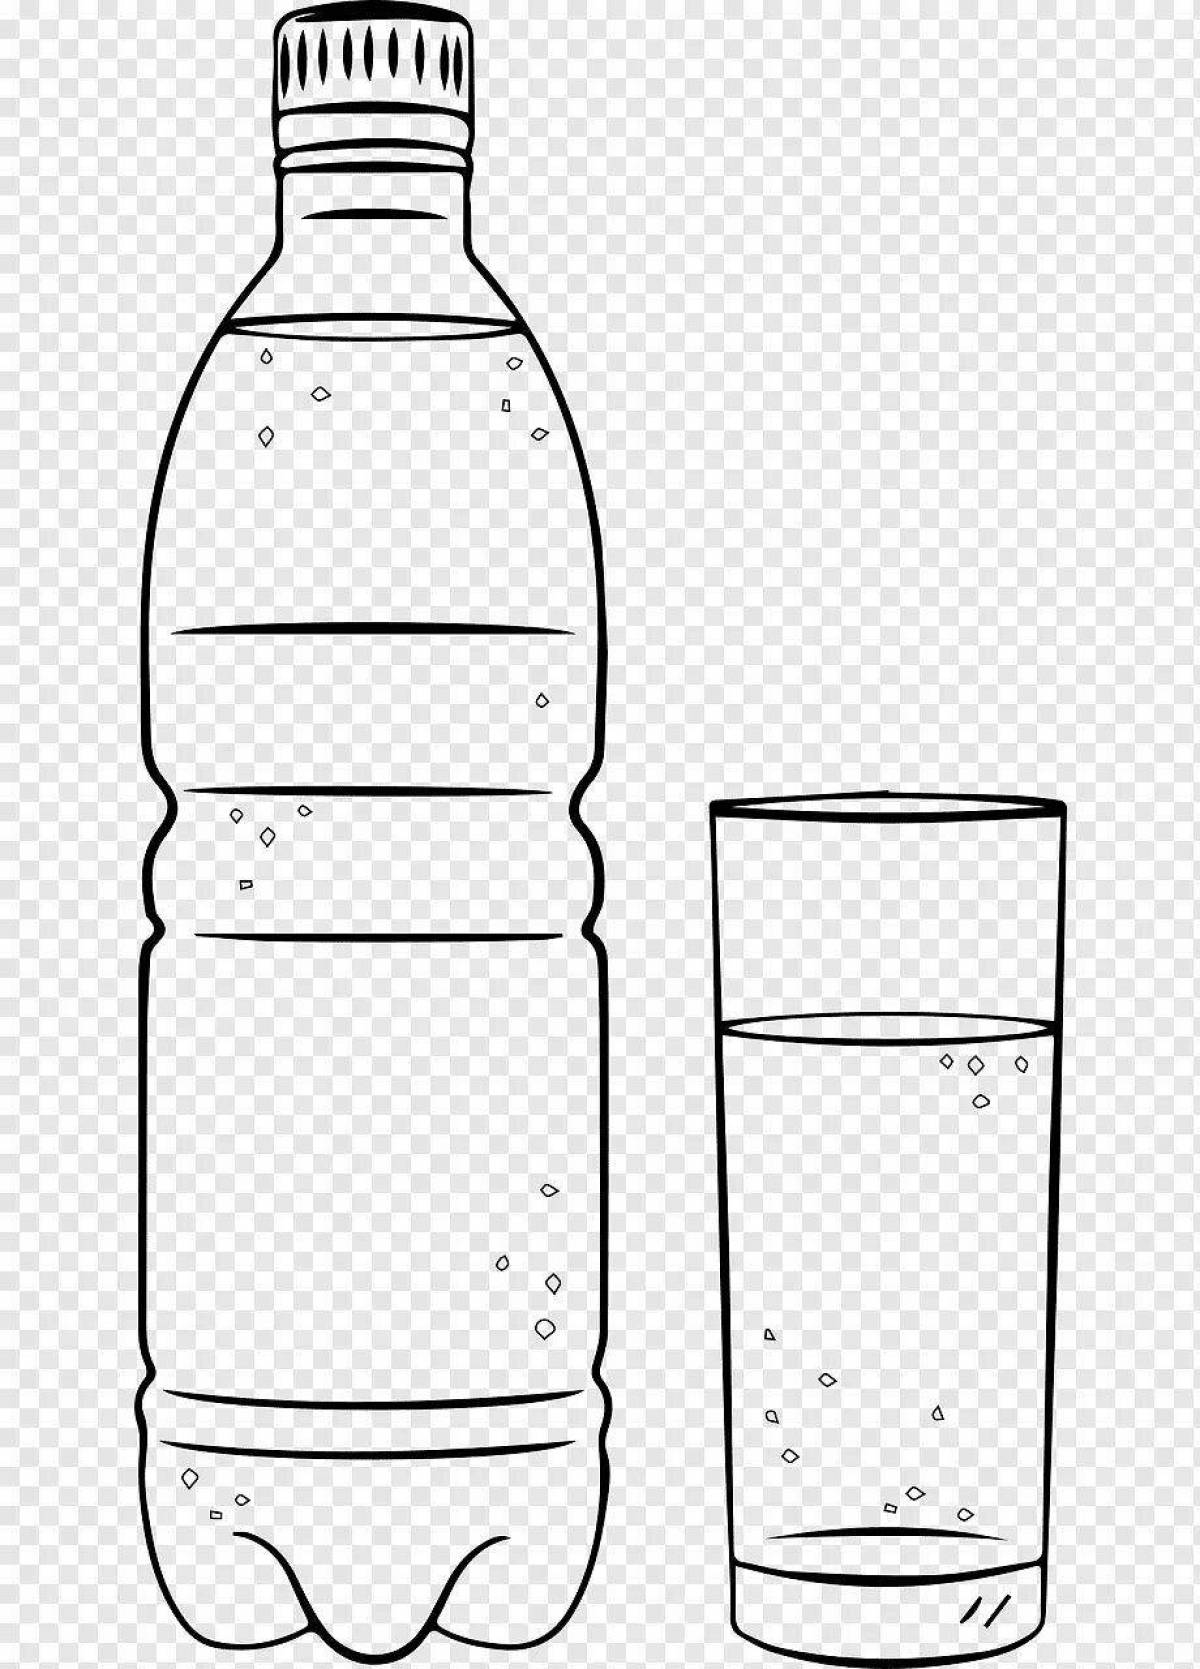 Water bottle #1